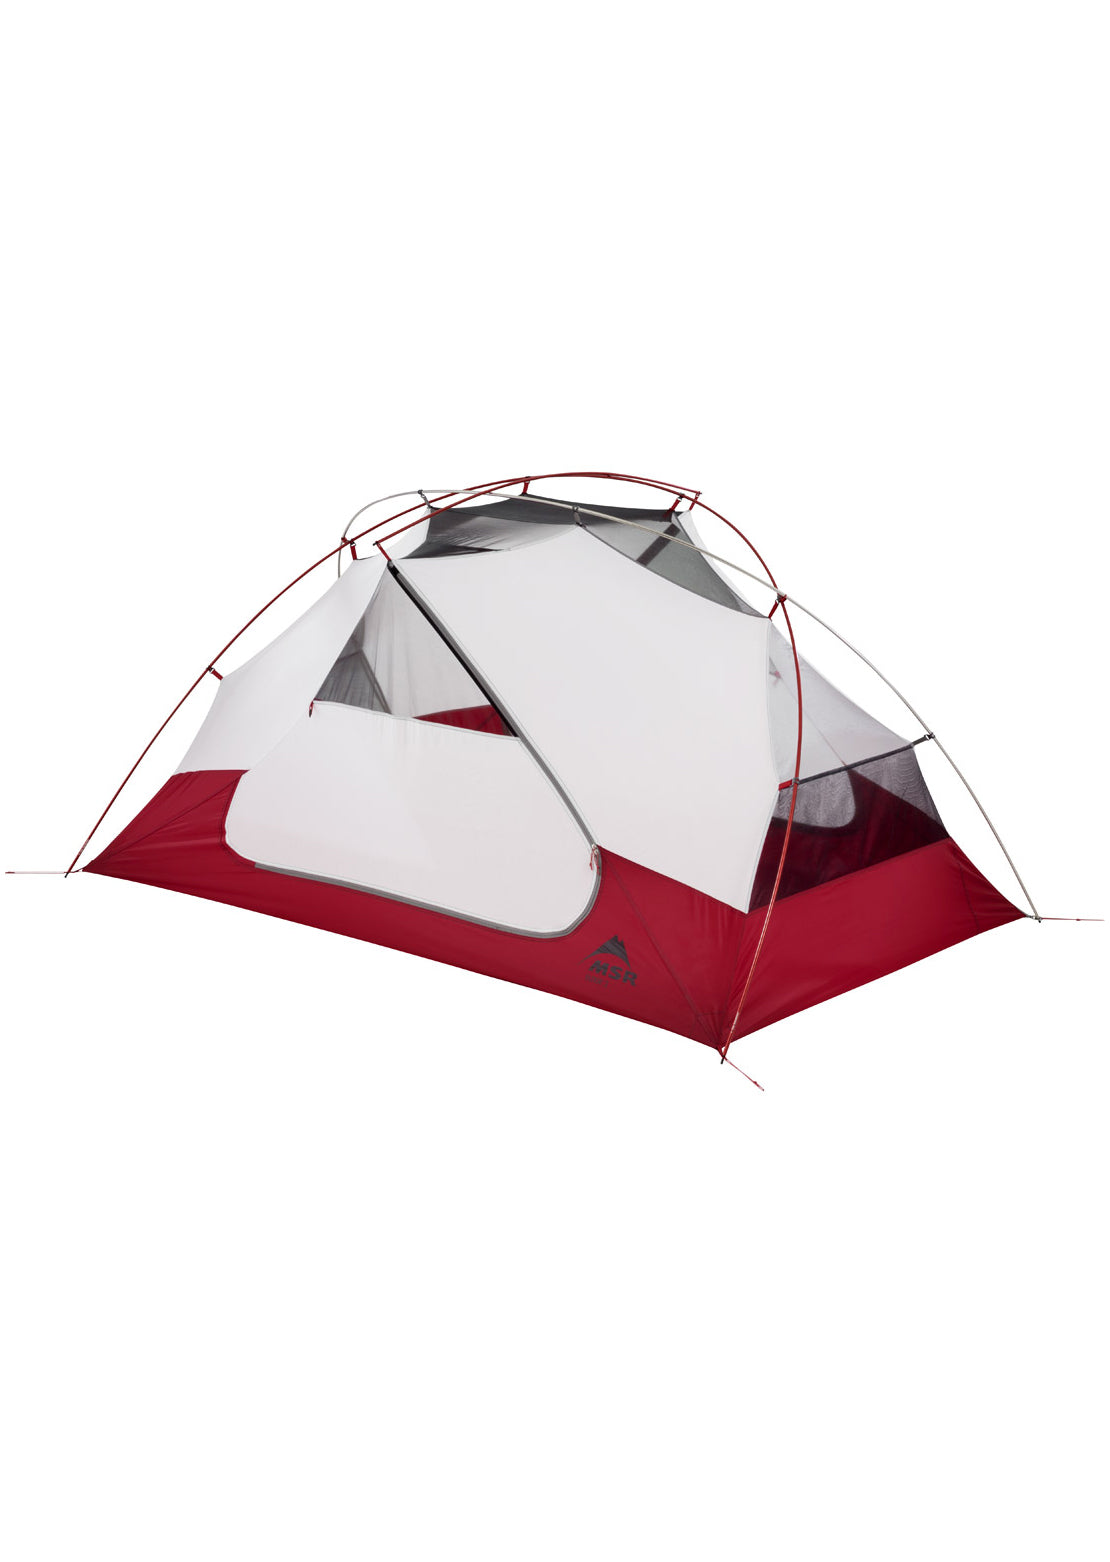 MSR Elixir 2 Backpack Tent